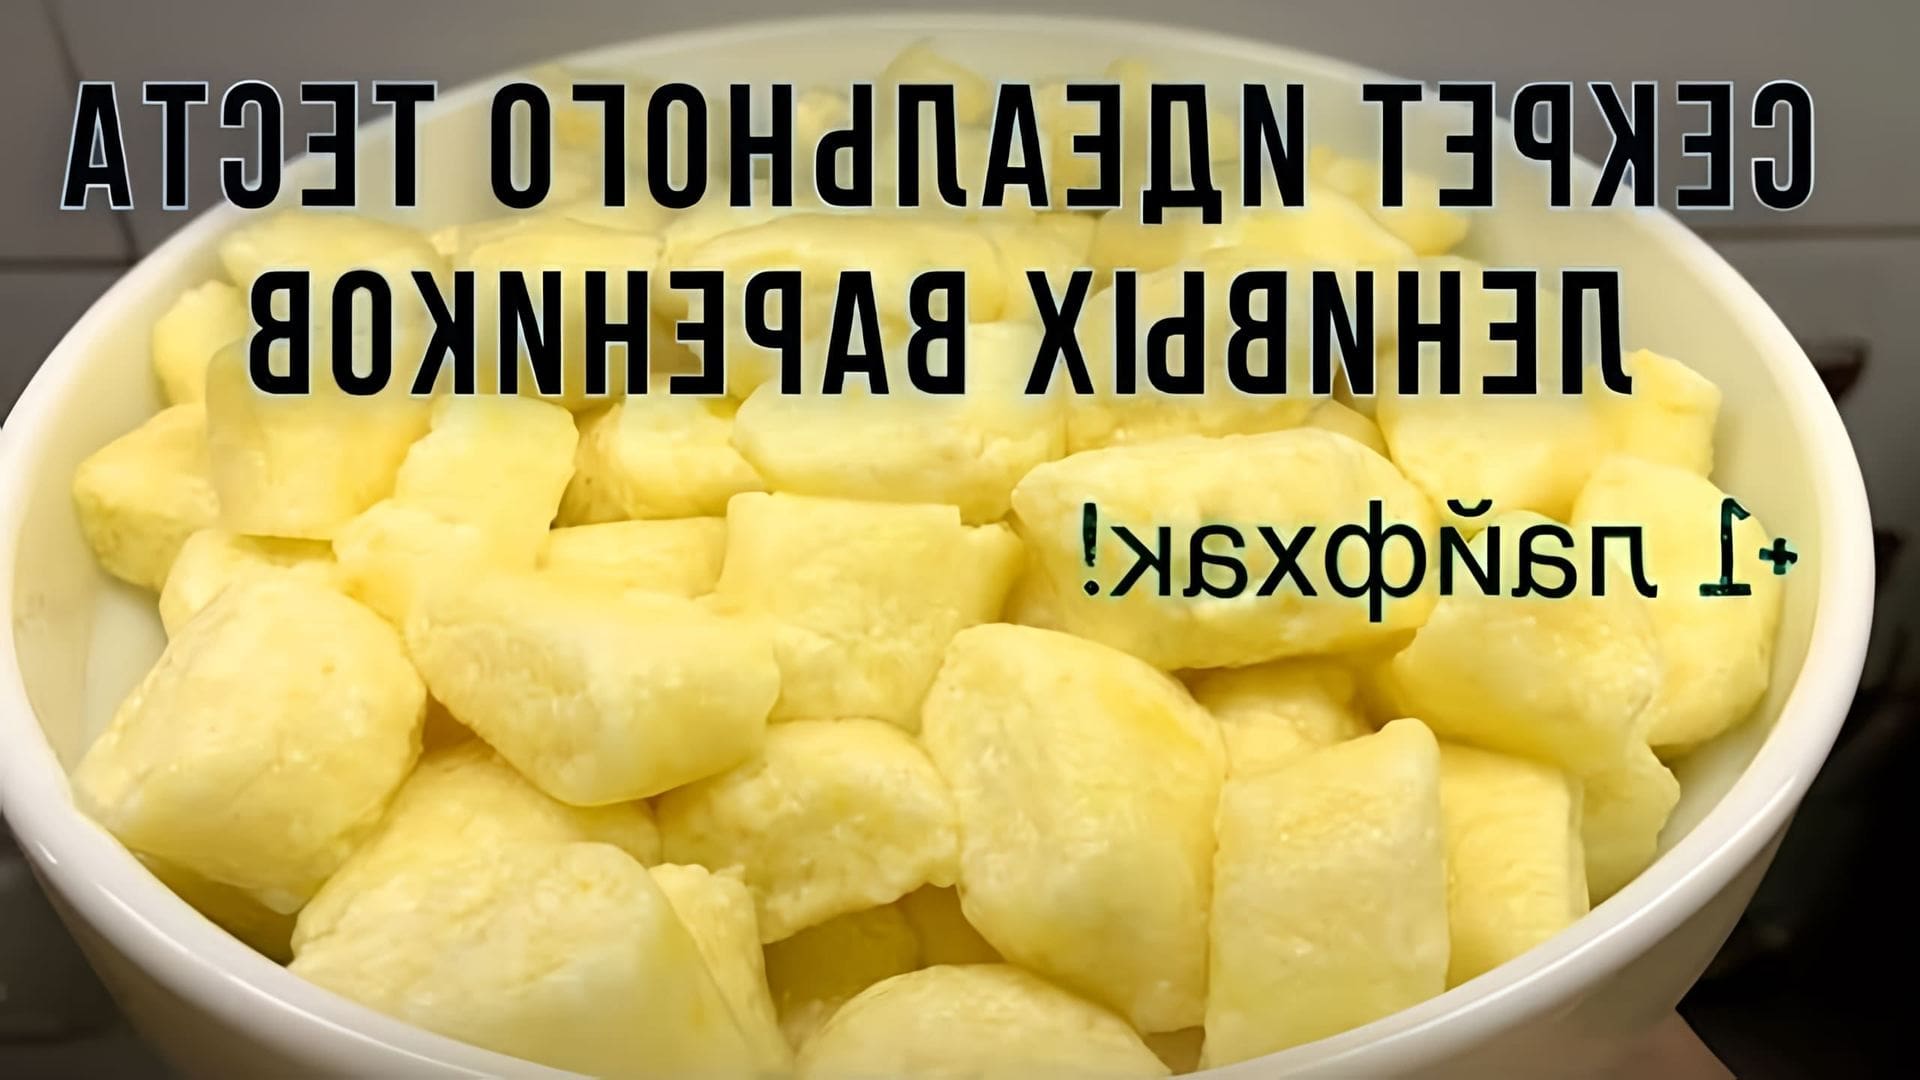 В этом видео демонстрируется рецепт приготовления ленивых вареников